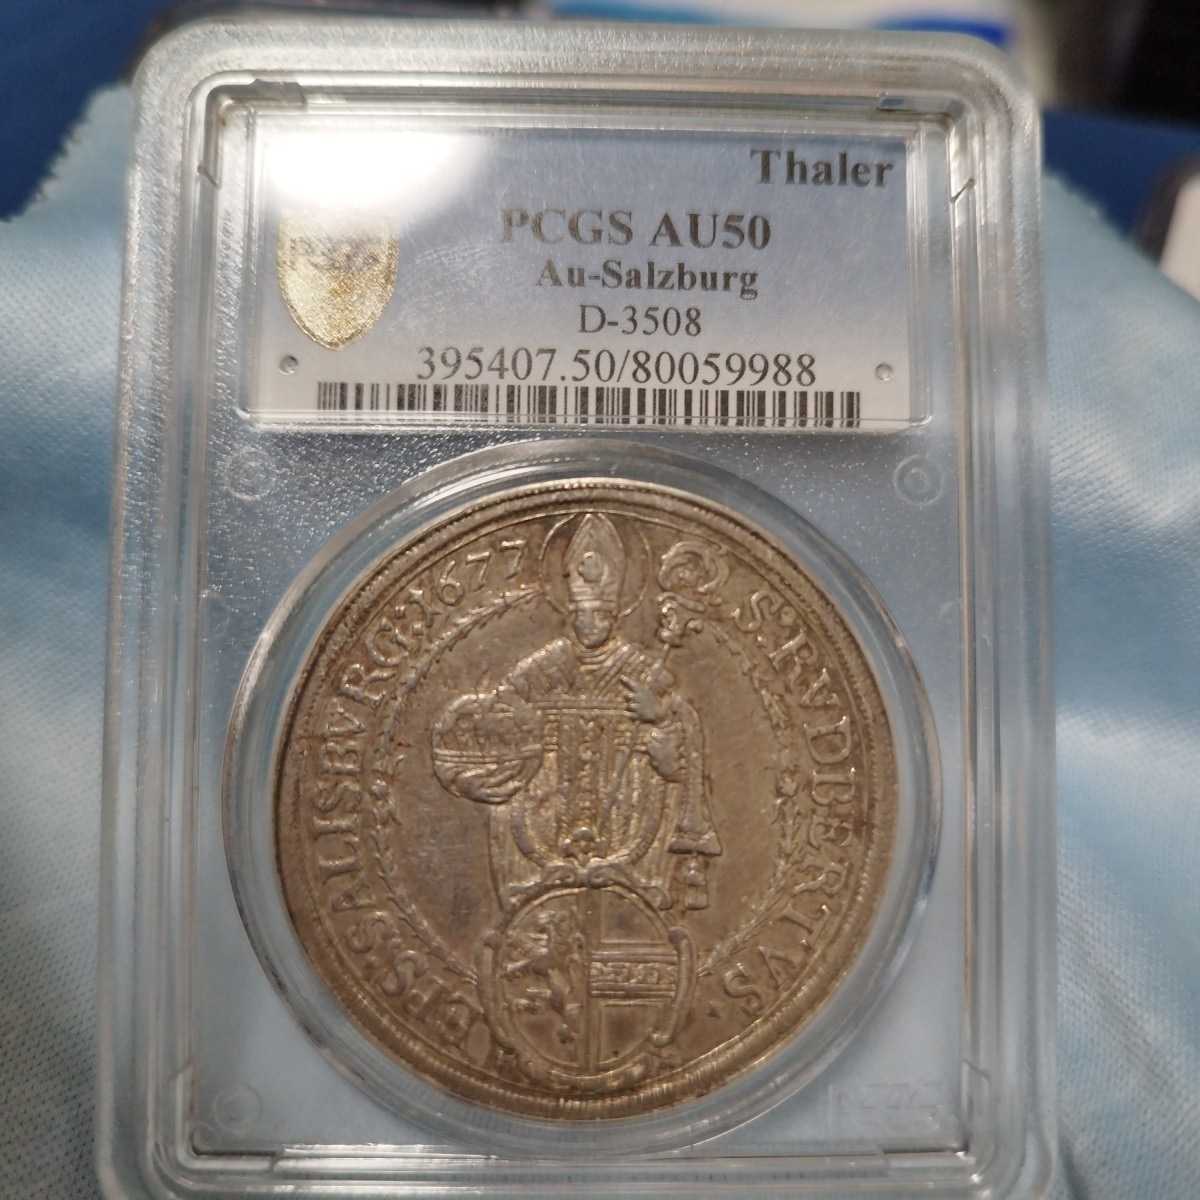 1677年 神聖ローマ帝国 ザルツブルク ターラー銀貨-